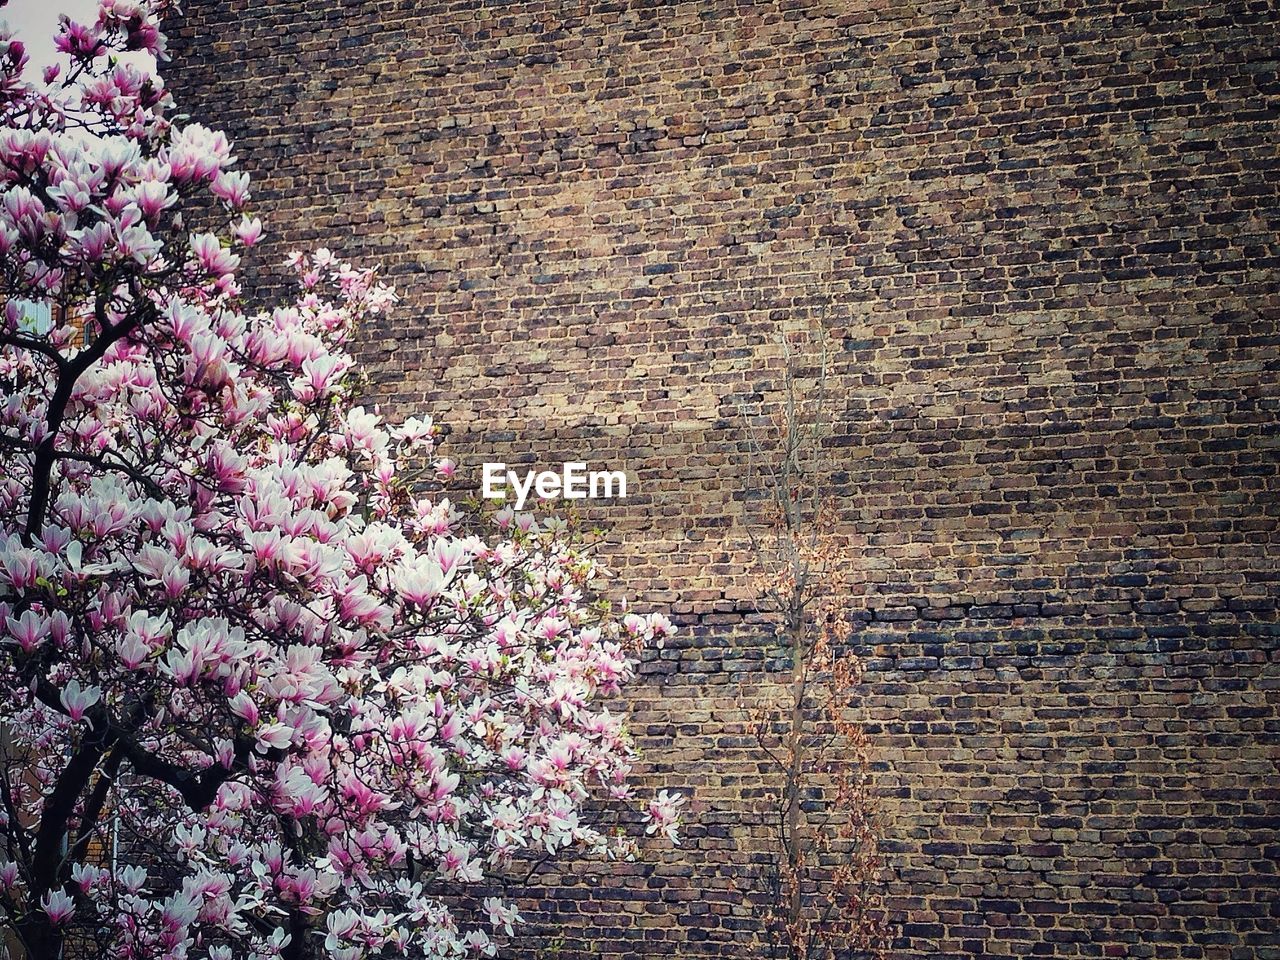 Pink flowering tree against brick wall